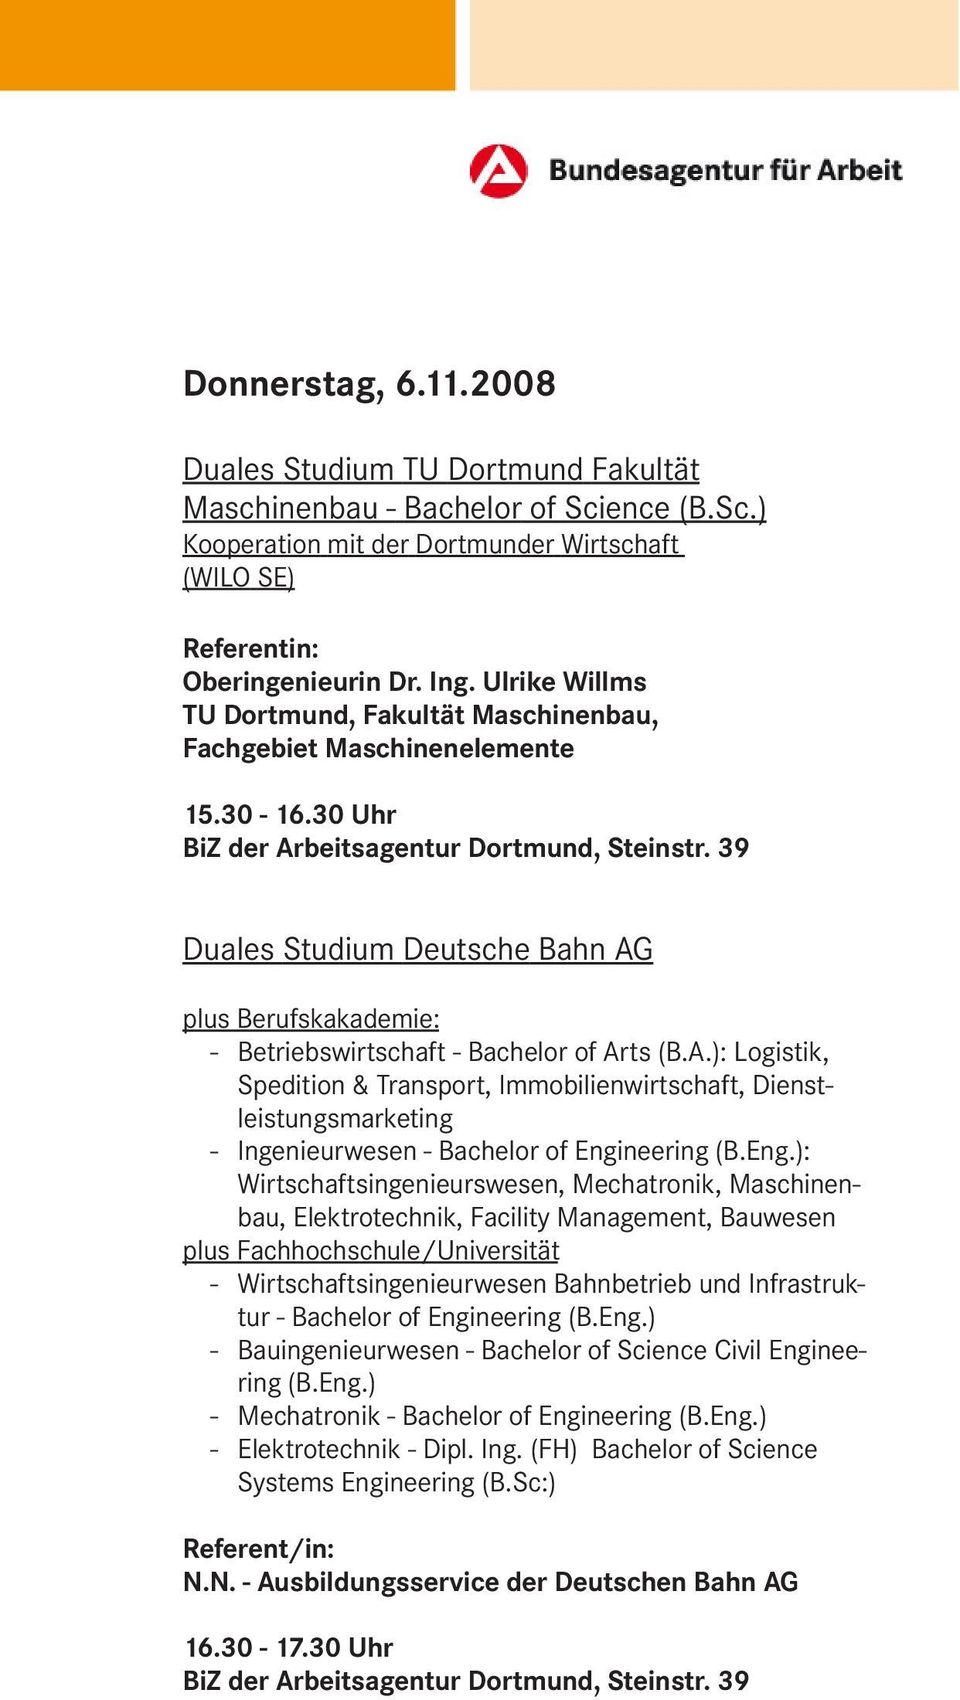 39 Duales Studium Deutsche Bahn AG plus Berufskakademie: - Betriebswirtschaft - Bachelor of Arts (B.A.): Logistik, Spedition & Transport, Immobilienwirtschaft, Dienstleistungsmarketing - Ingenieurwesen - Bachelor of Engineering (B.